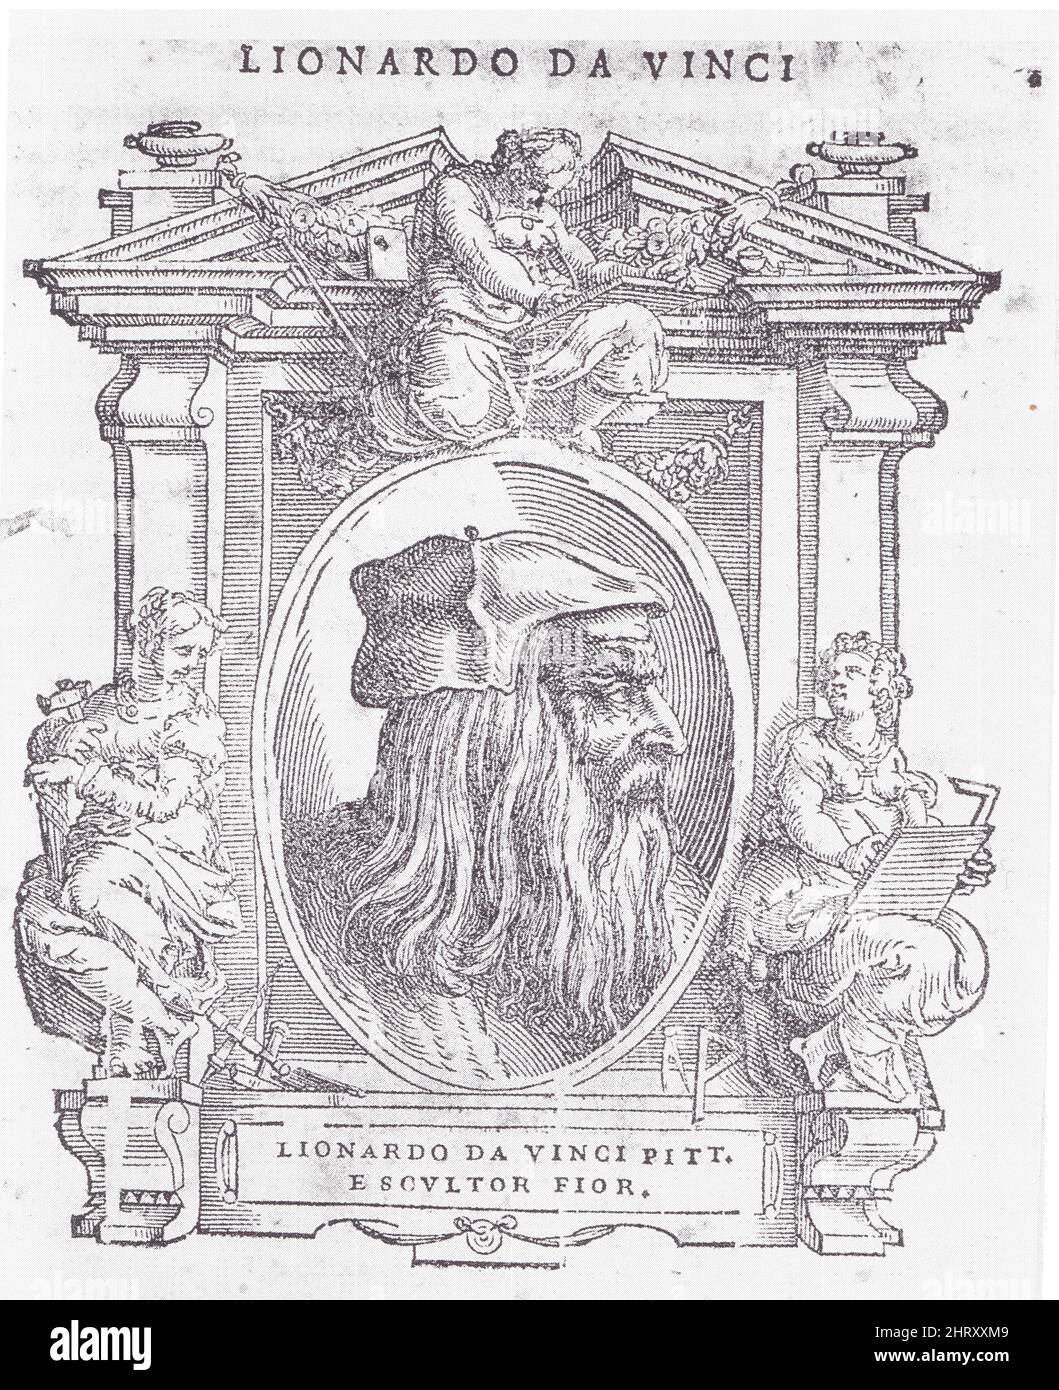 PORTRAIT DE LÉONARD DE VINCI. GRAVURE SUR BOIS DE LA VIE DES ARTISTES DE VASARI. 1568 Banque D'Images